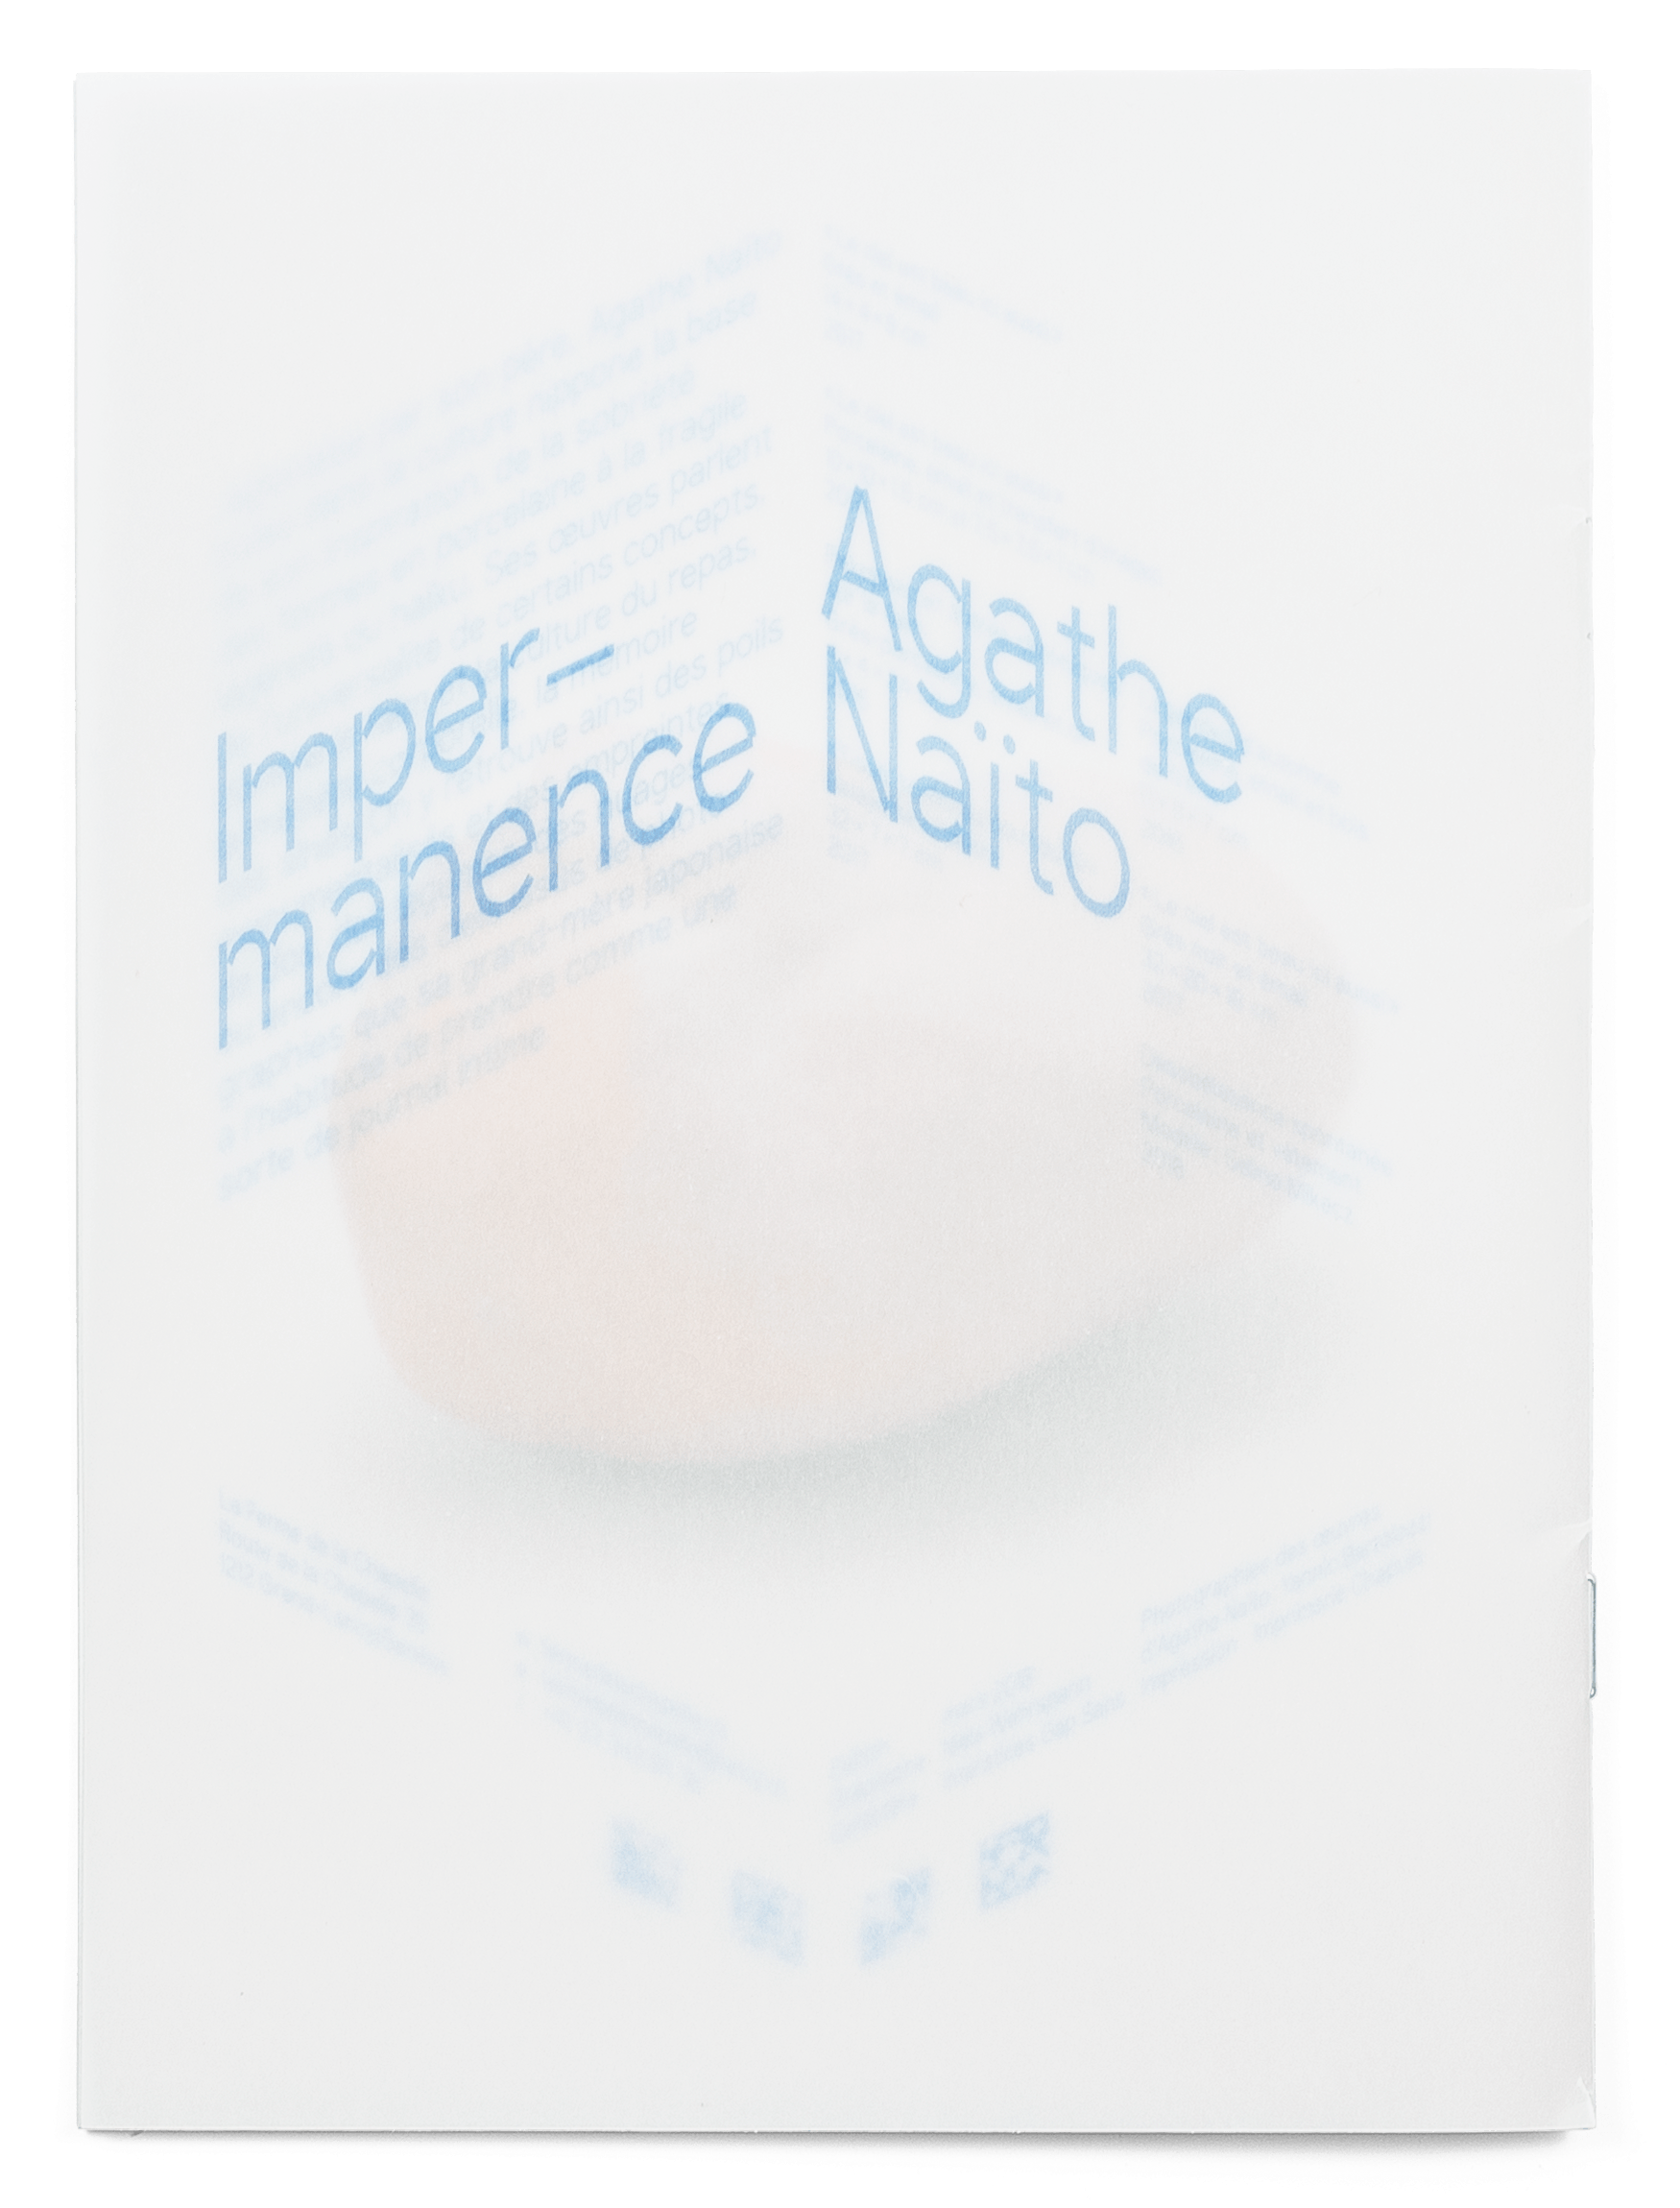 Annabel Aoun Blanco, Agathe Naïto, brochure